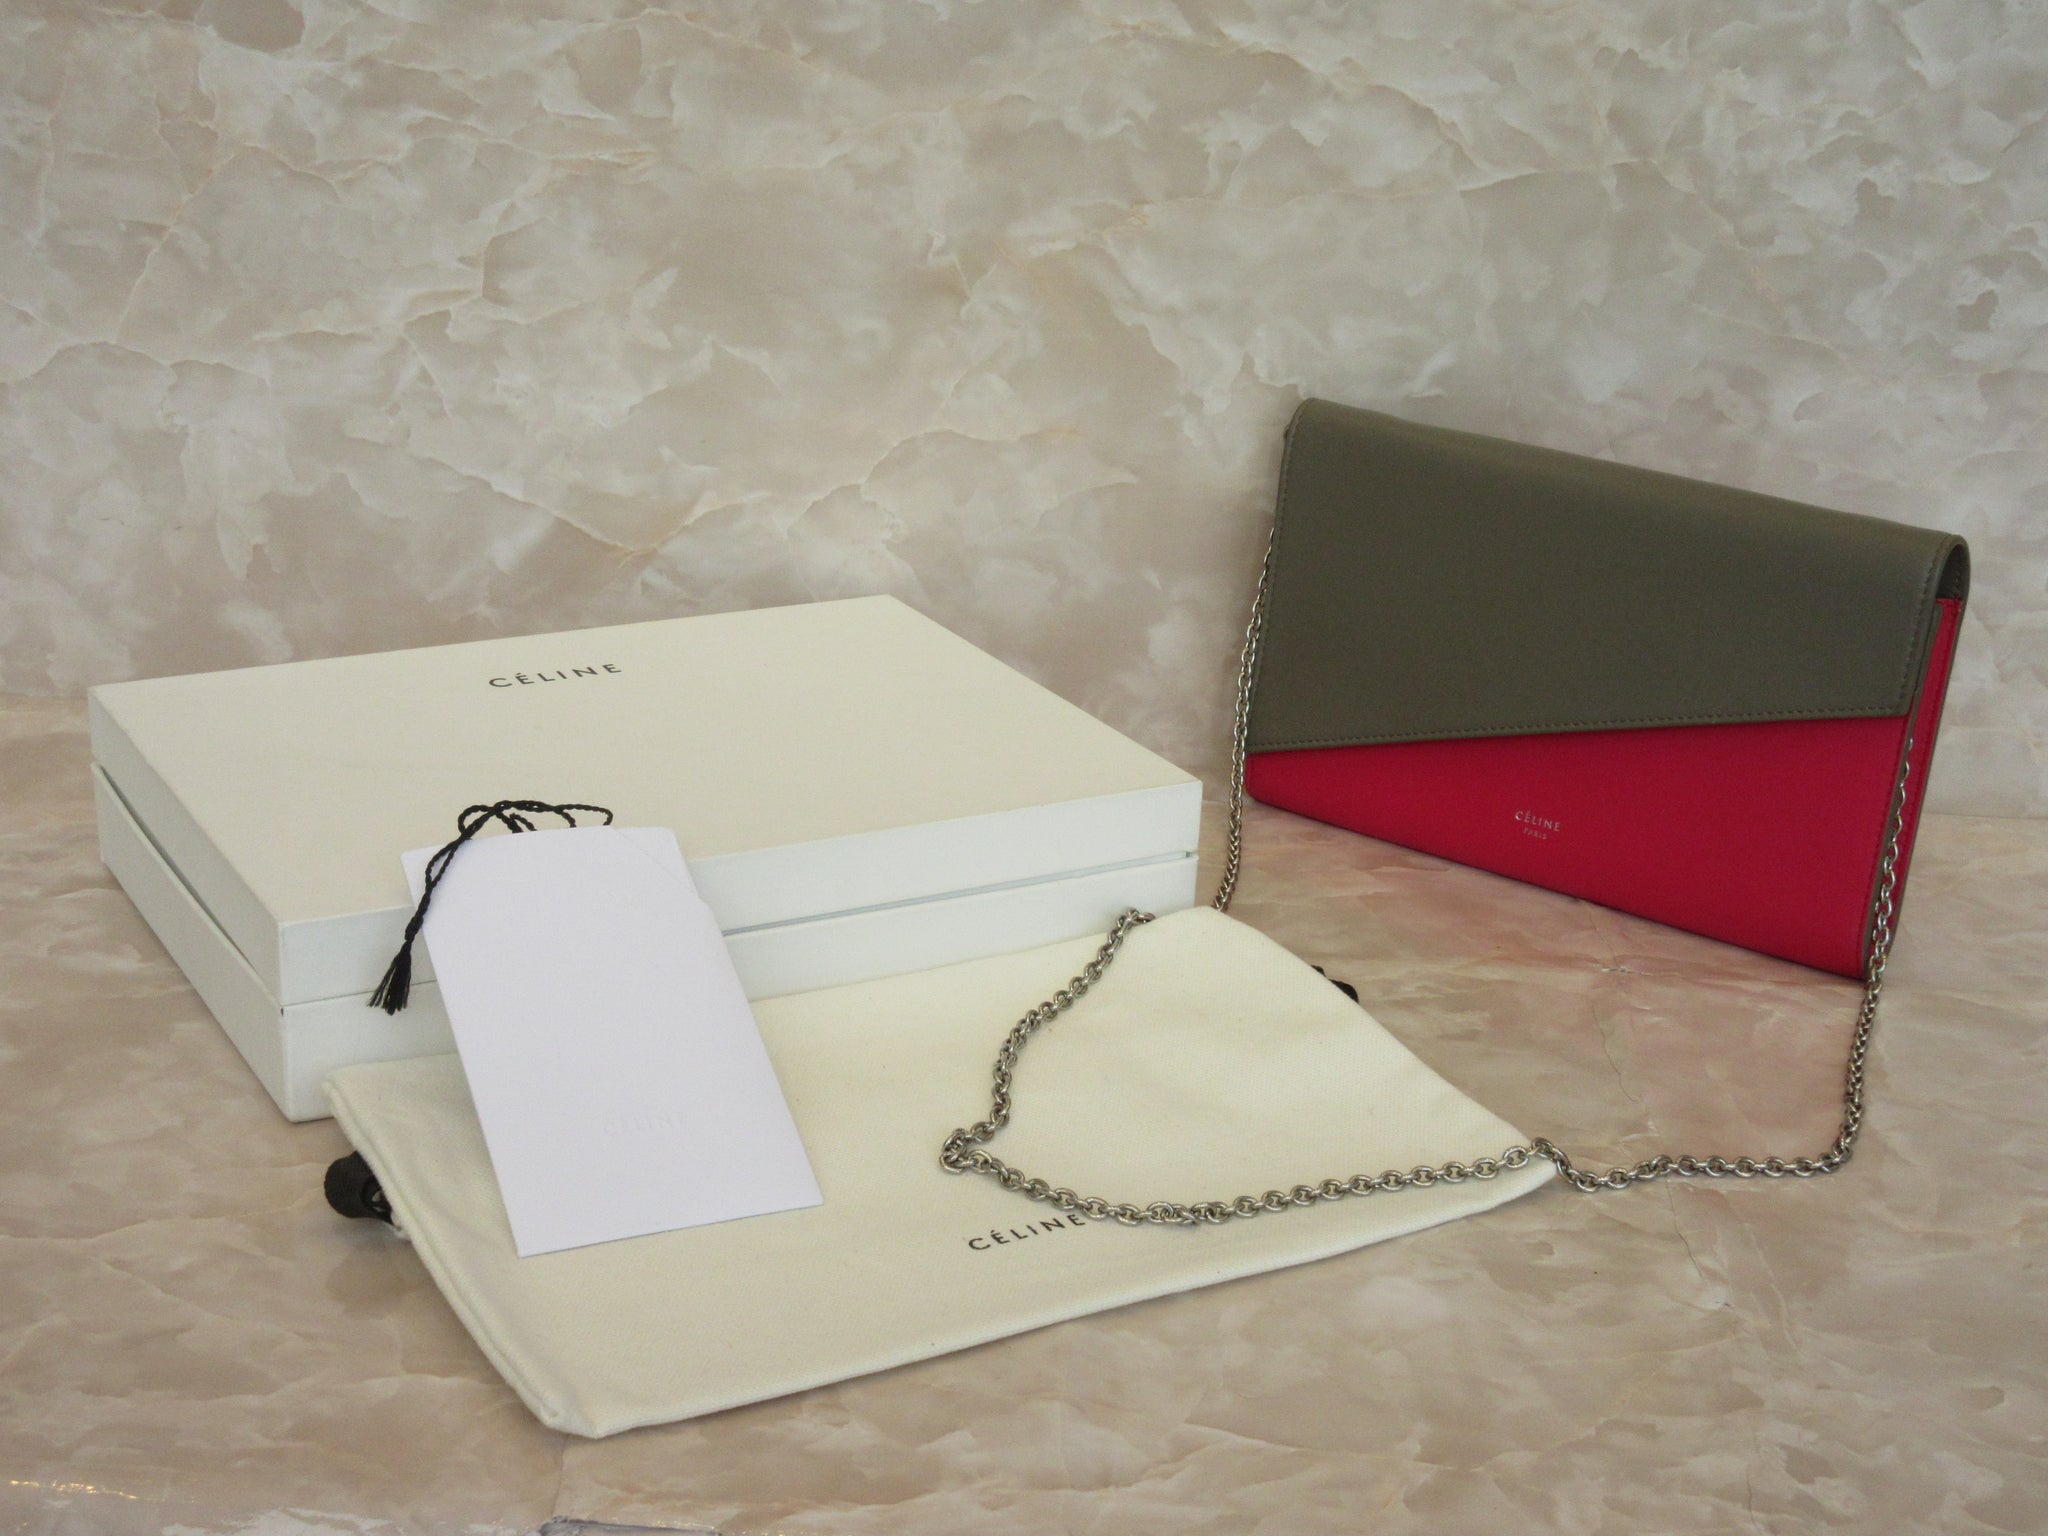 CELINE Large flap on Chain Wallet Leather Gray/Pink Shoulder bag 20110 –  BRANDSHOP-RESHINE